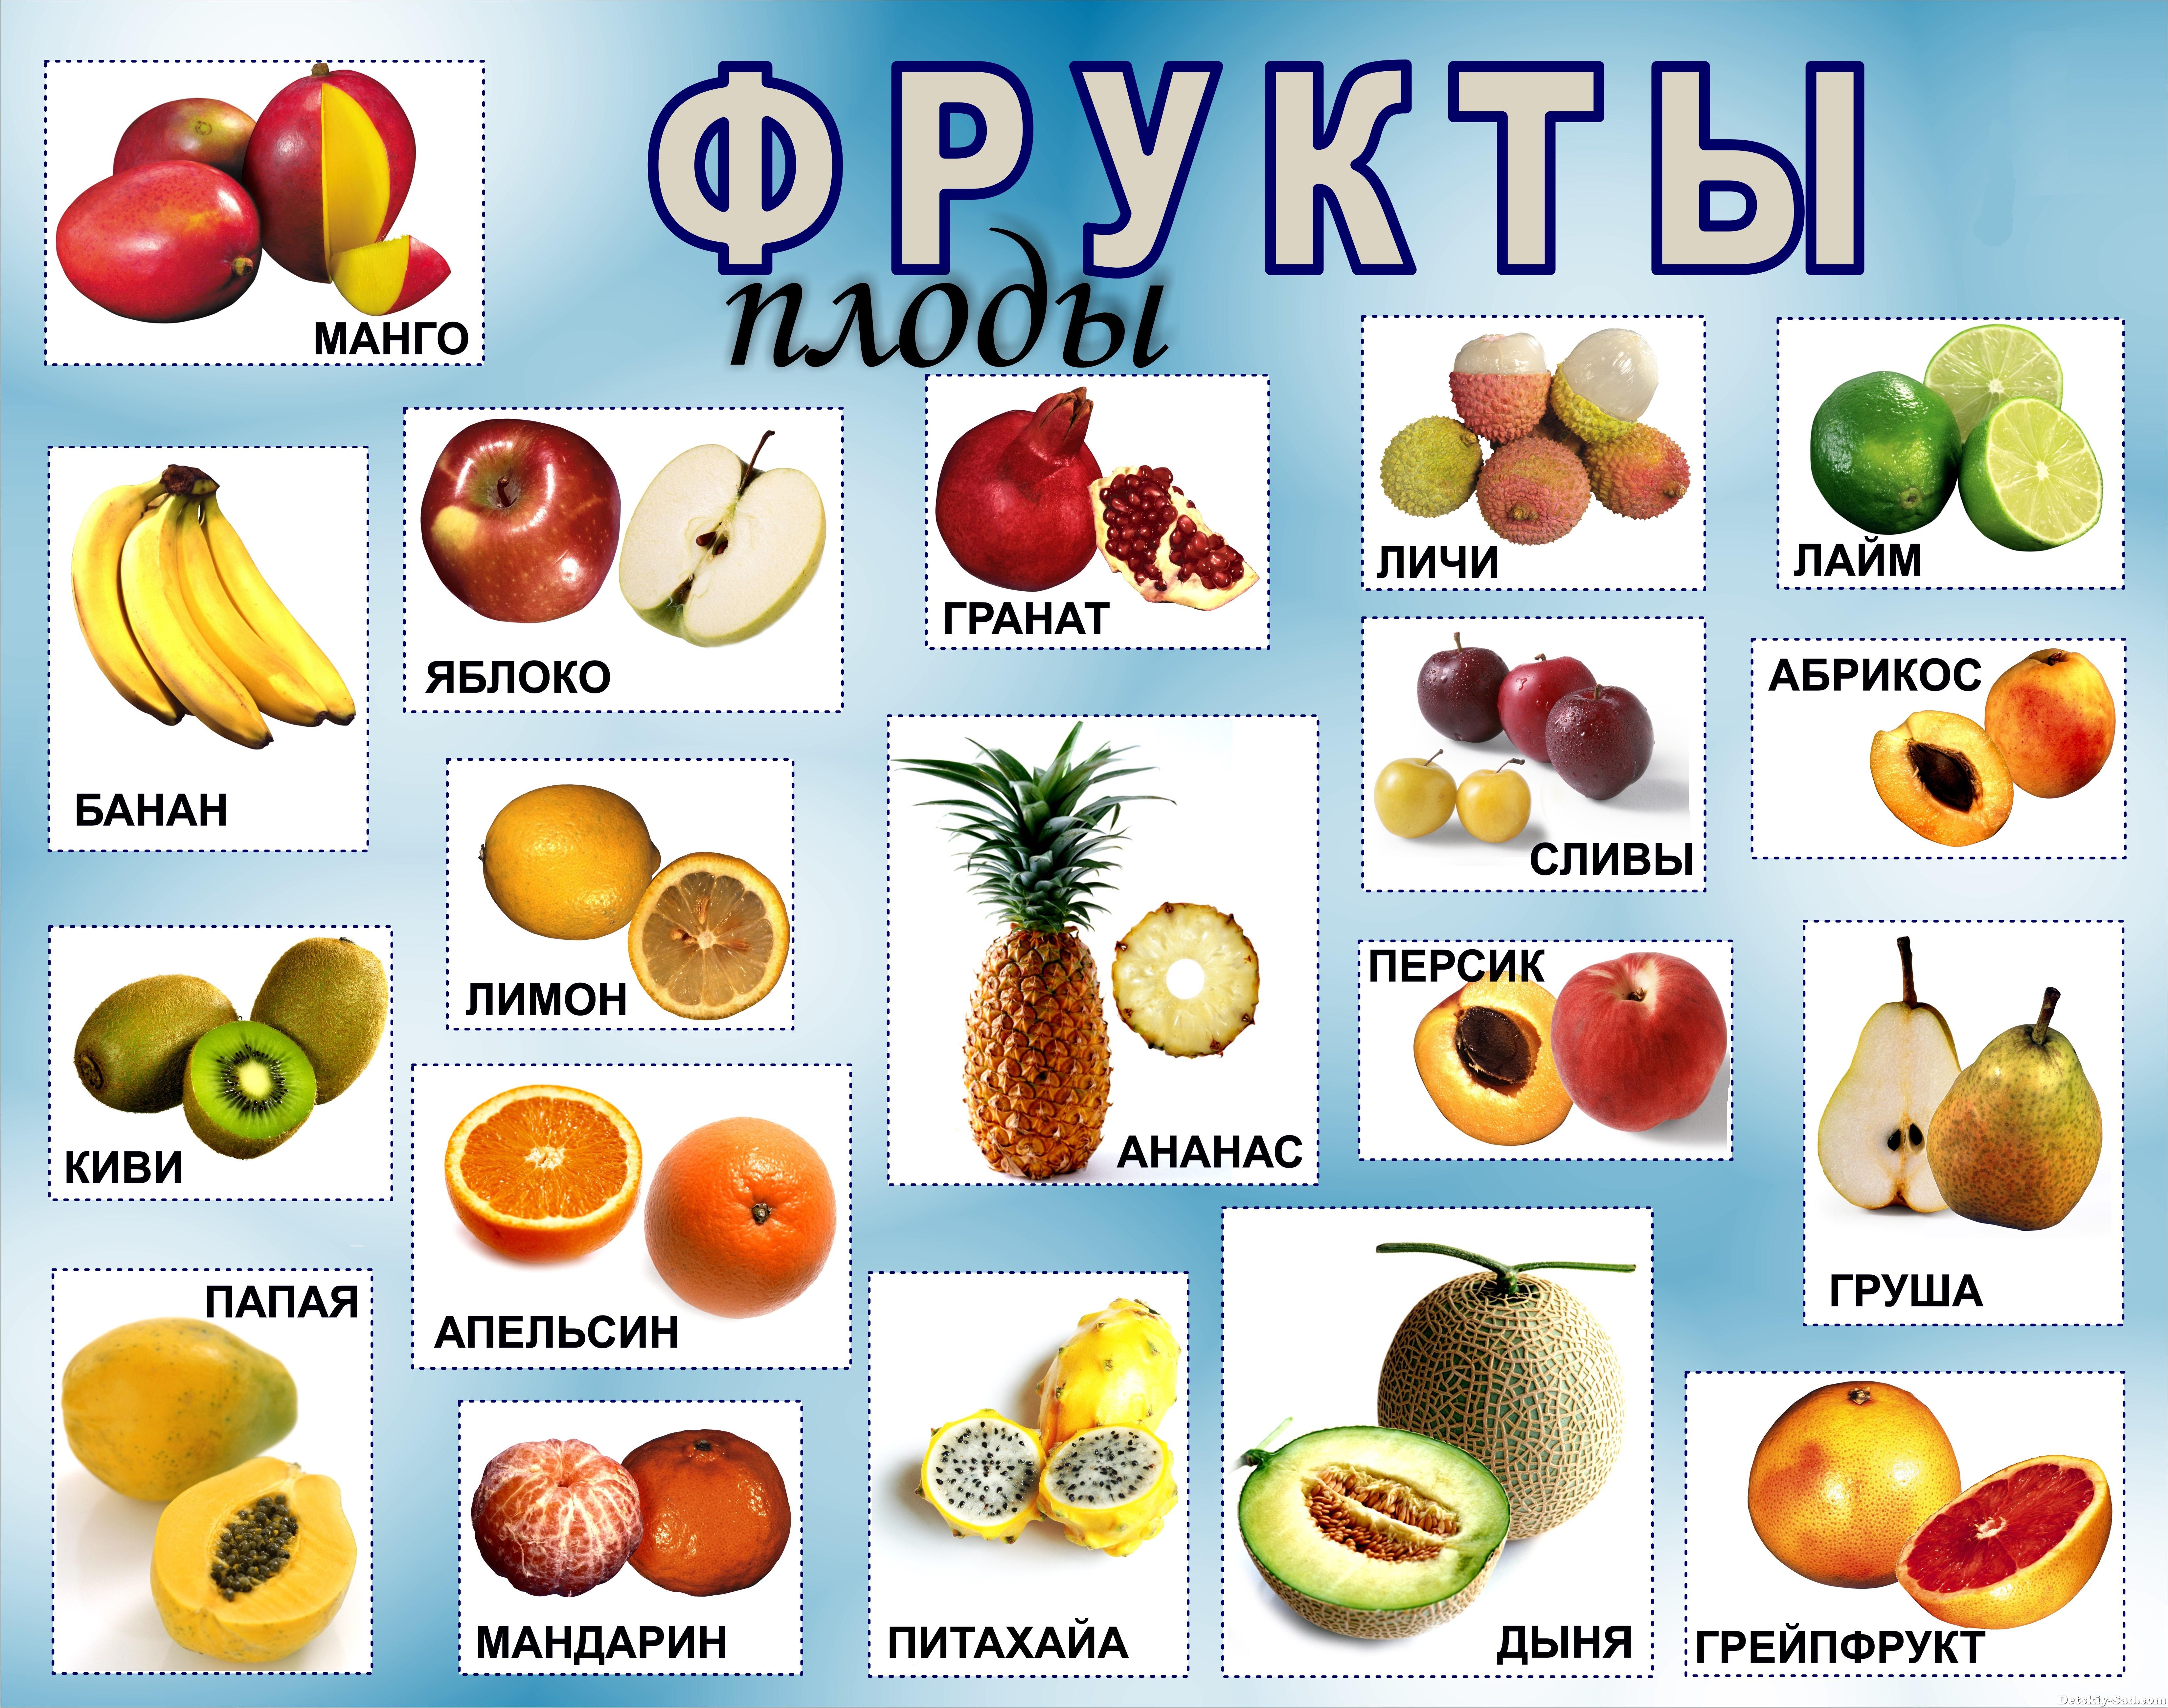 2 4 всех фруктов составляют персики. Название фруктов. Овощи и фрукты названия. Фрукты и ягоды с названиями. Название фруктов с картинками.